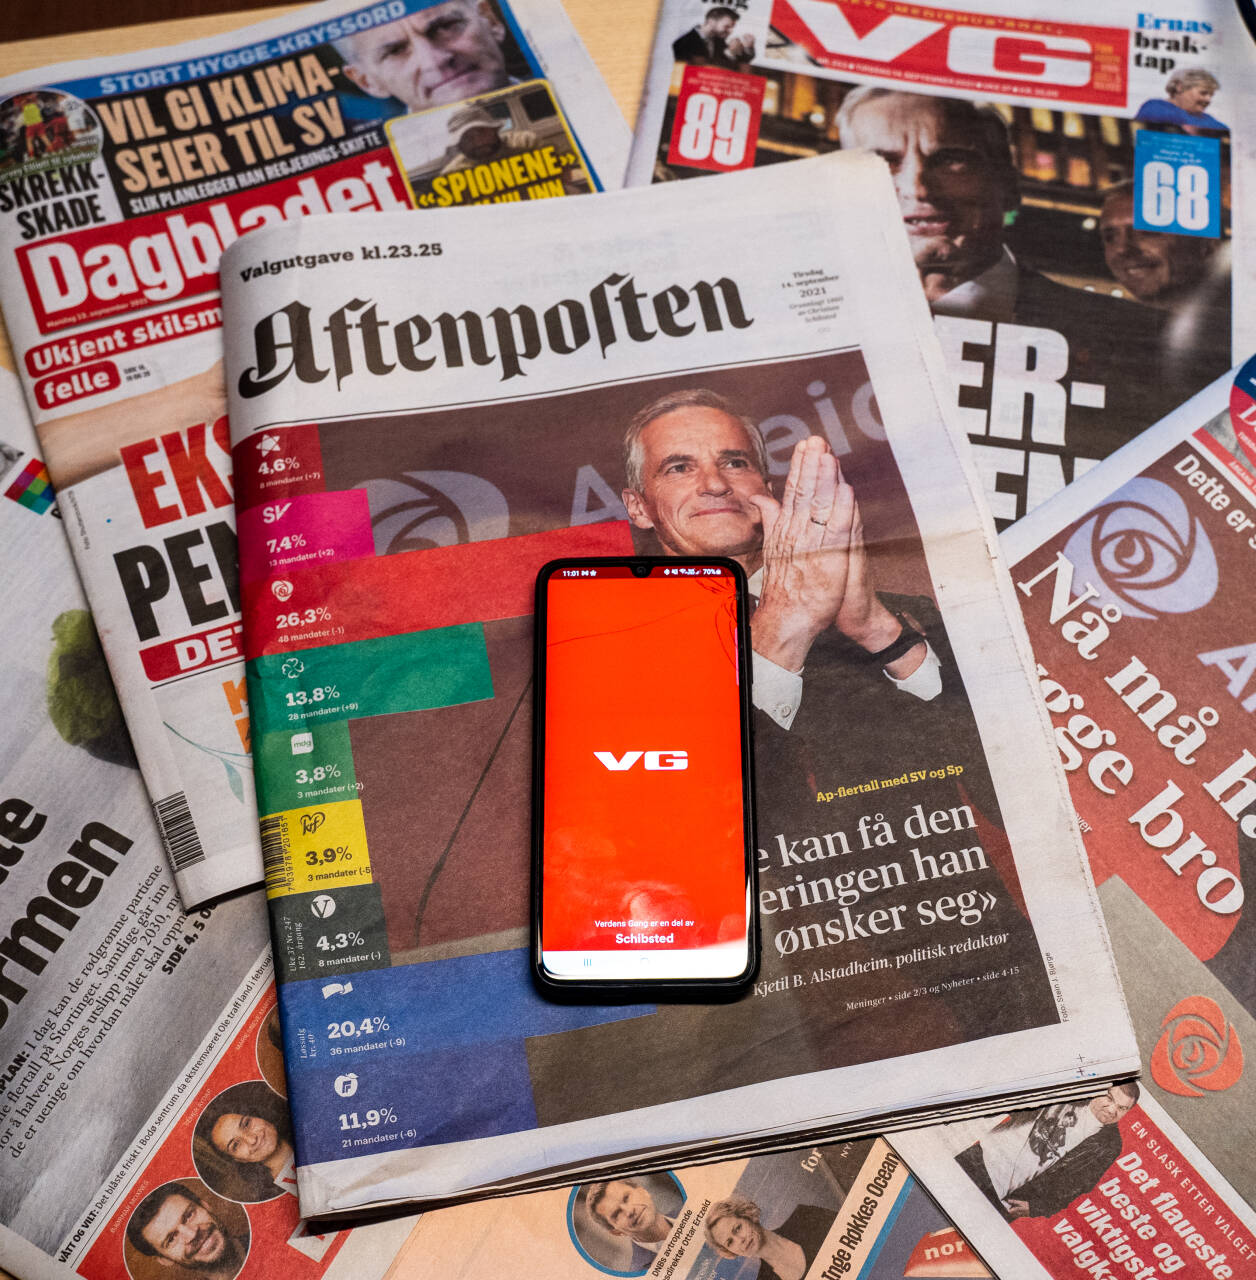 VG er mest leste mediehus og er den digitale avisen med flest lesere, mens Aftenposten er største papiravis.Foto: Ali Zare / NTB